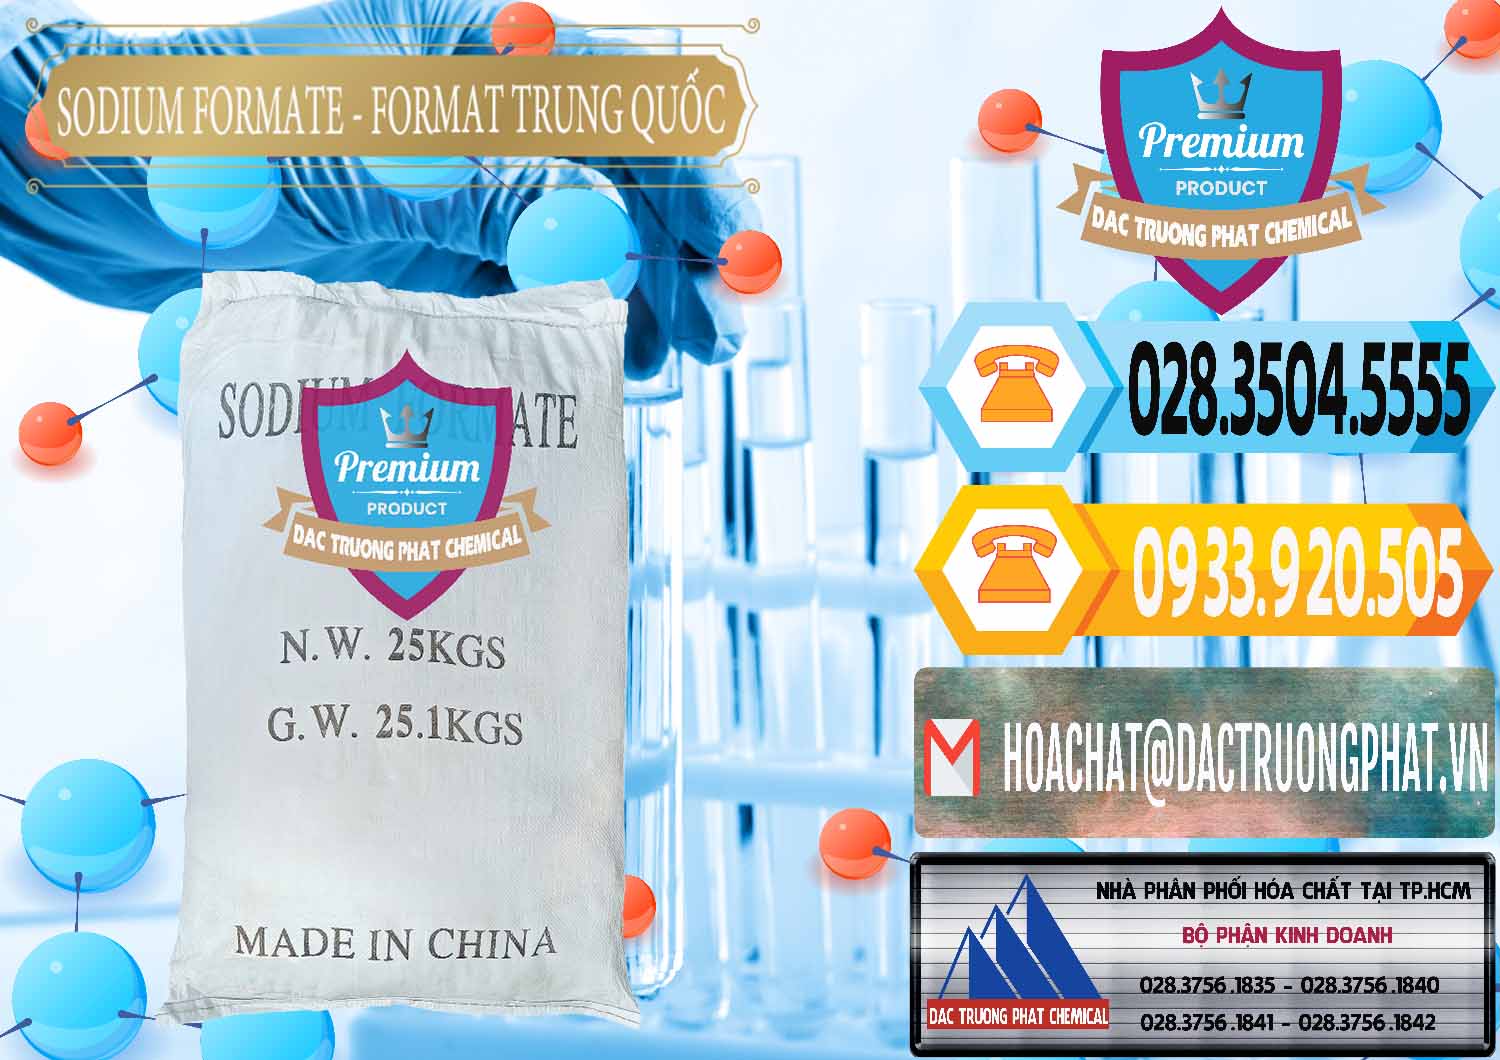 Cty chuyên cung cấp _ bán Sodium Formate - Natri Format Trung Quốc China - 0142 - Chuyên cung cấp ( phân phối ) hóa chất tại TP.HCM - hoachattayrua.net